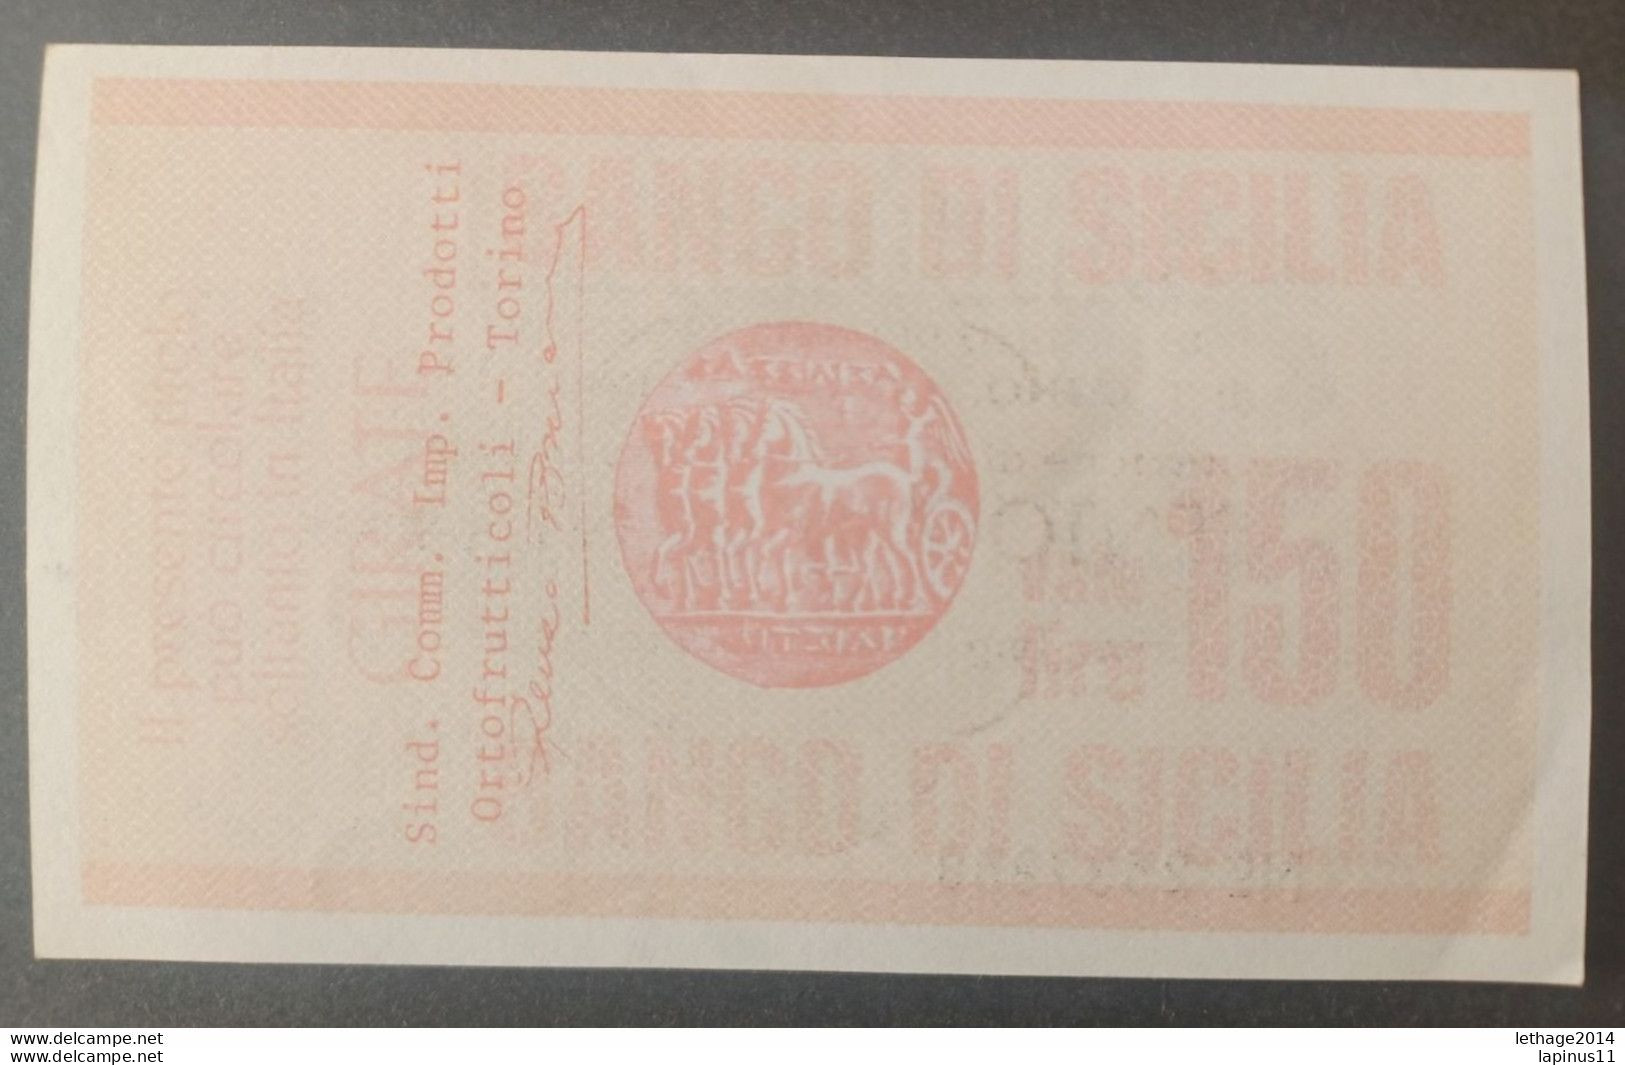 BANKNOTE ITALY MINICHECKS 150 LIRE BANCO DI SICILIA 1977 FDS - [10] Cheques Y Mini-cheques